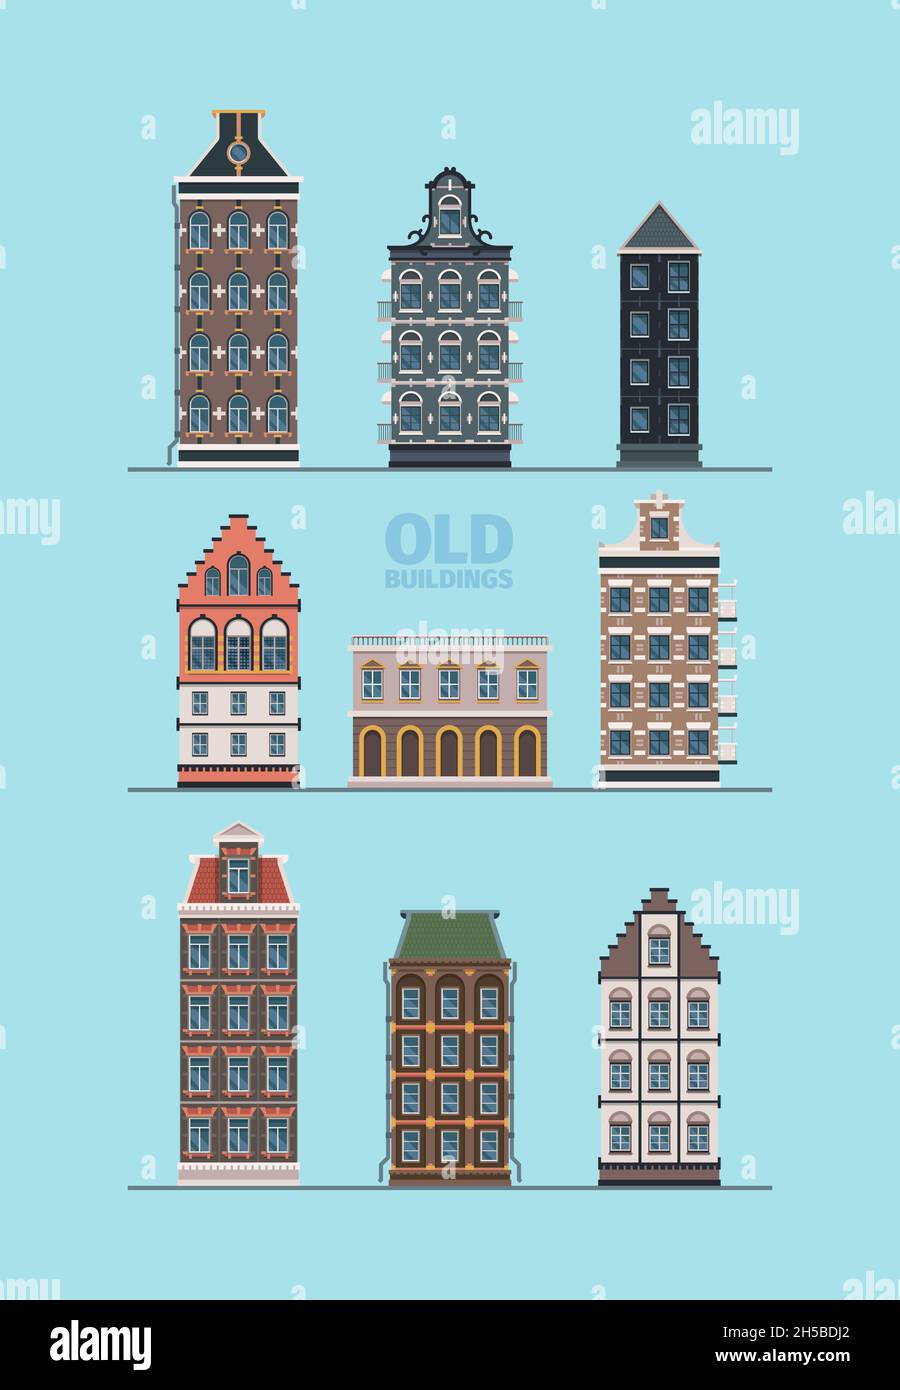 Alte Außengebäude. Europäische Straße altmodische Konstruktion detaillierte schöne Fassaden grellen flachen Vektor-Bilder Sammlung Stock Vektor